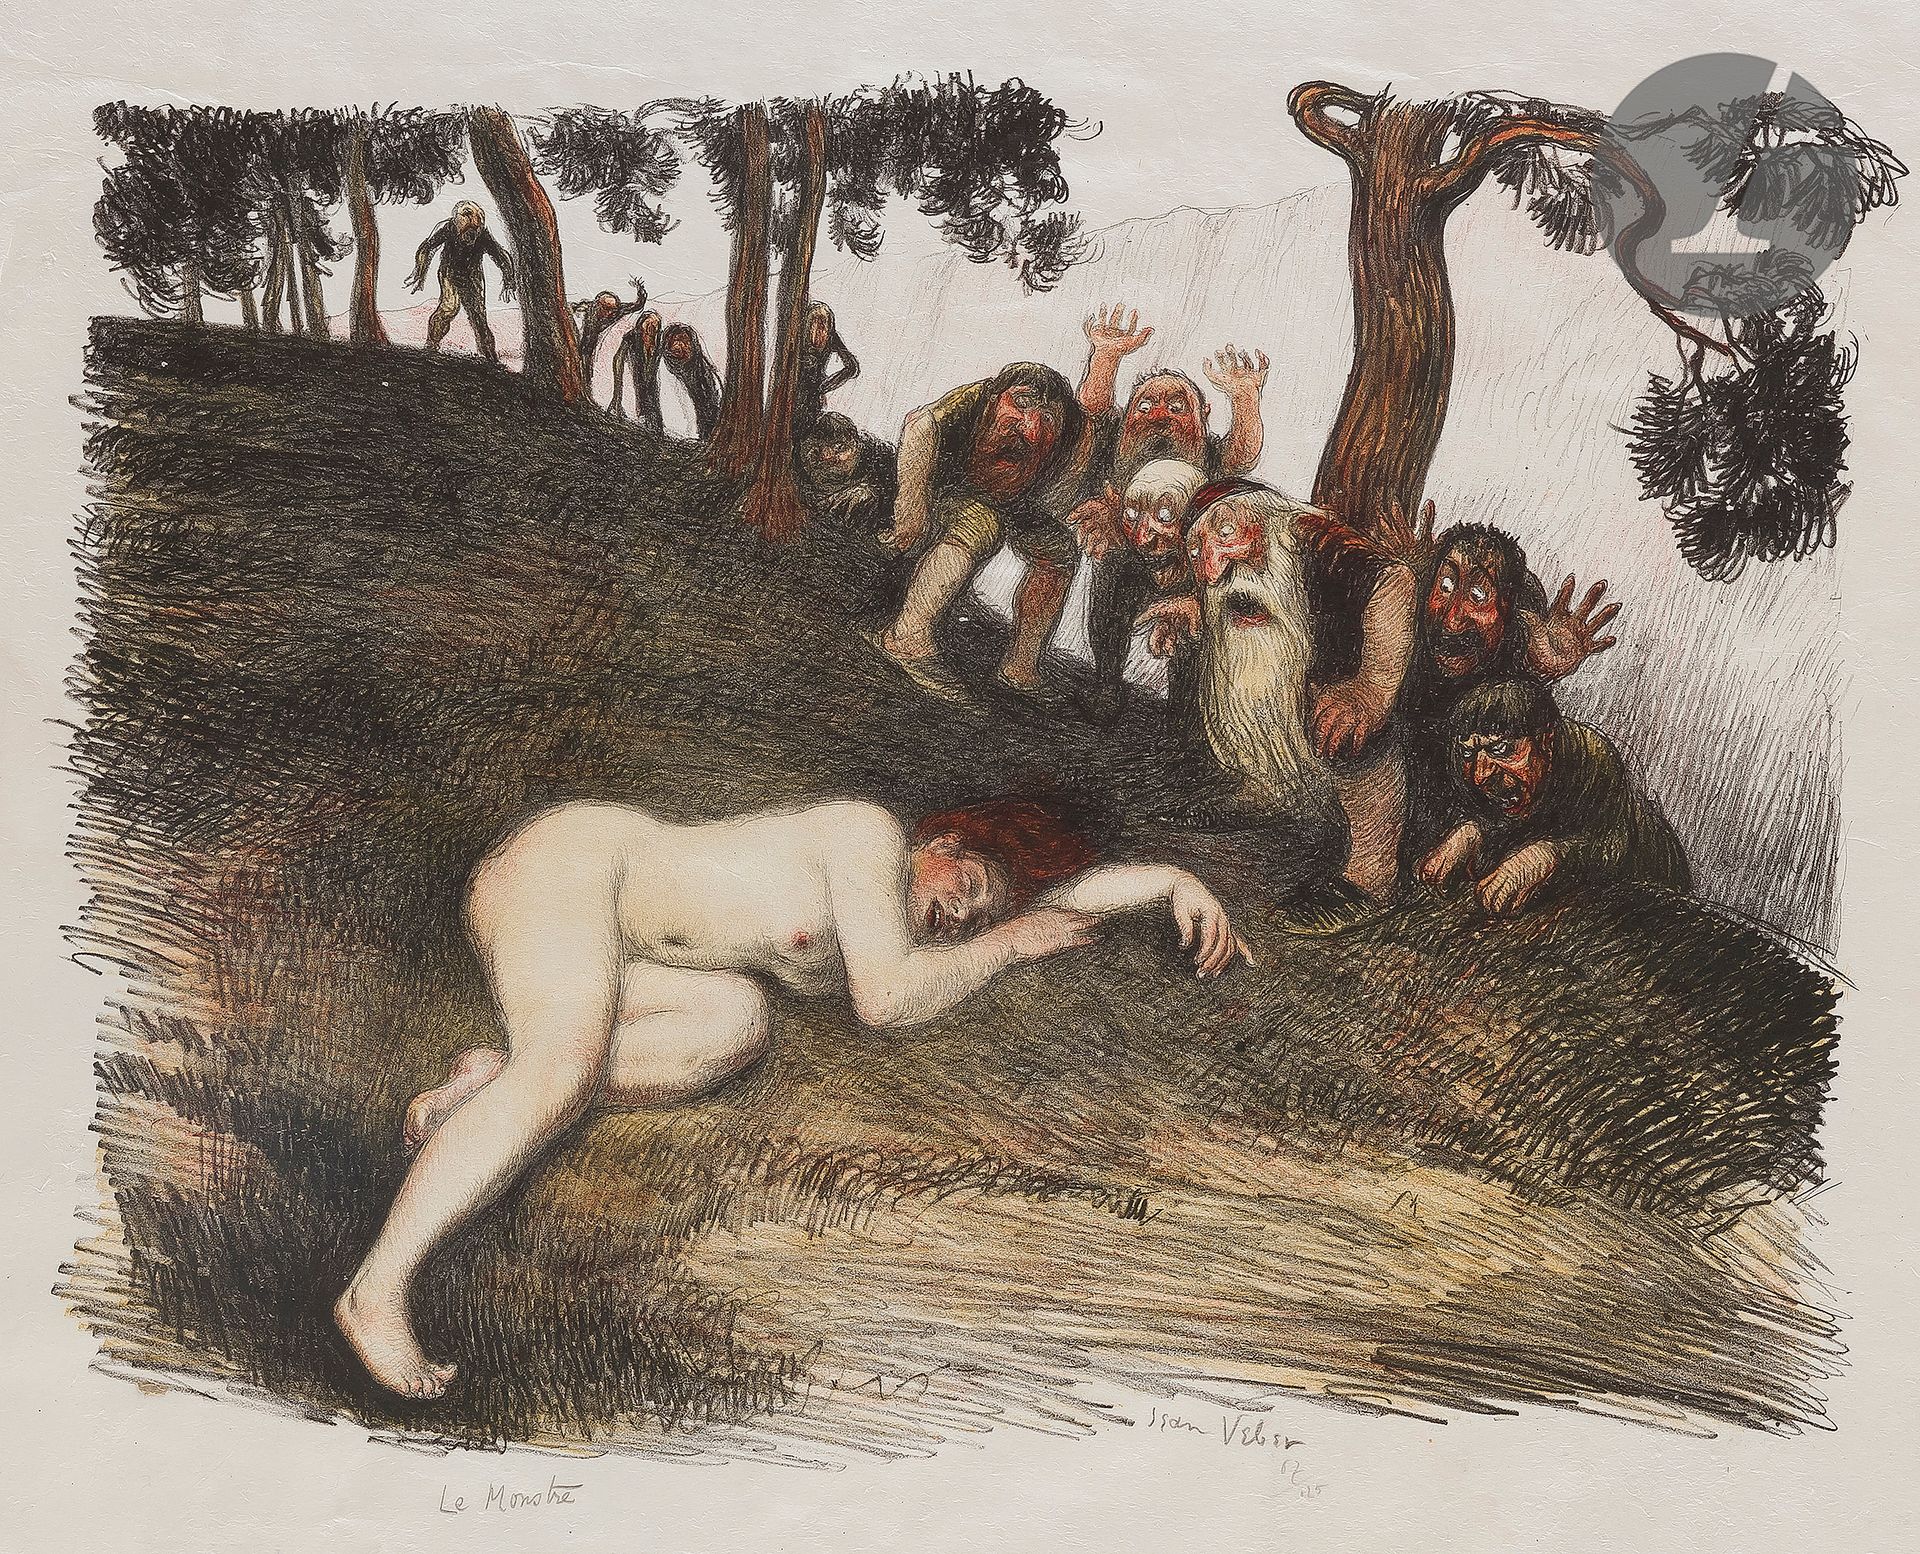 Null 让-维伯(1864-1928)

怪物。1907.石版画。380 x 293 mm。Veber和Lacroix 51.以彩色印刷。在日本上有很好的证明&hellip;